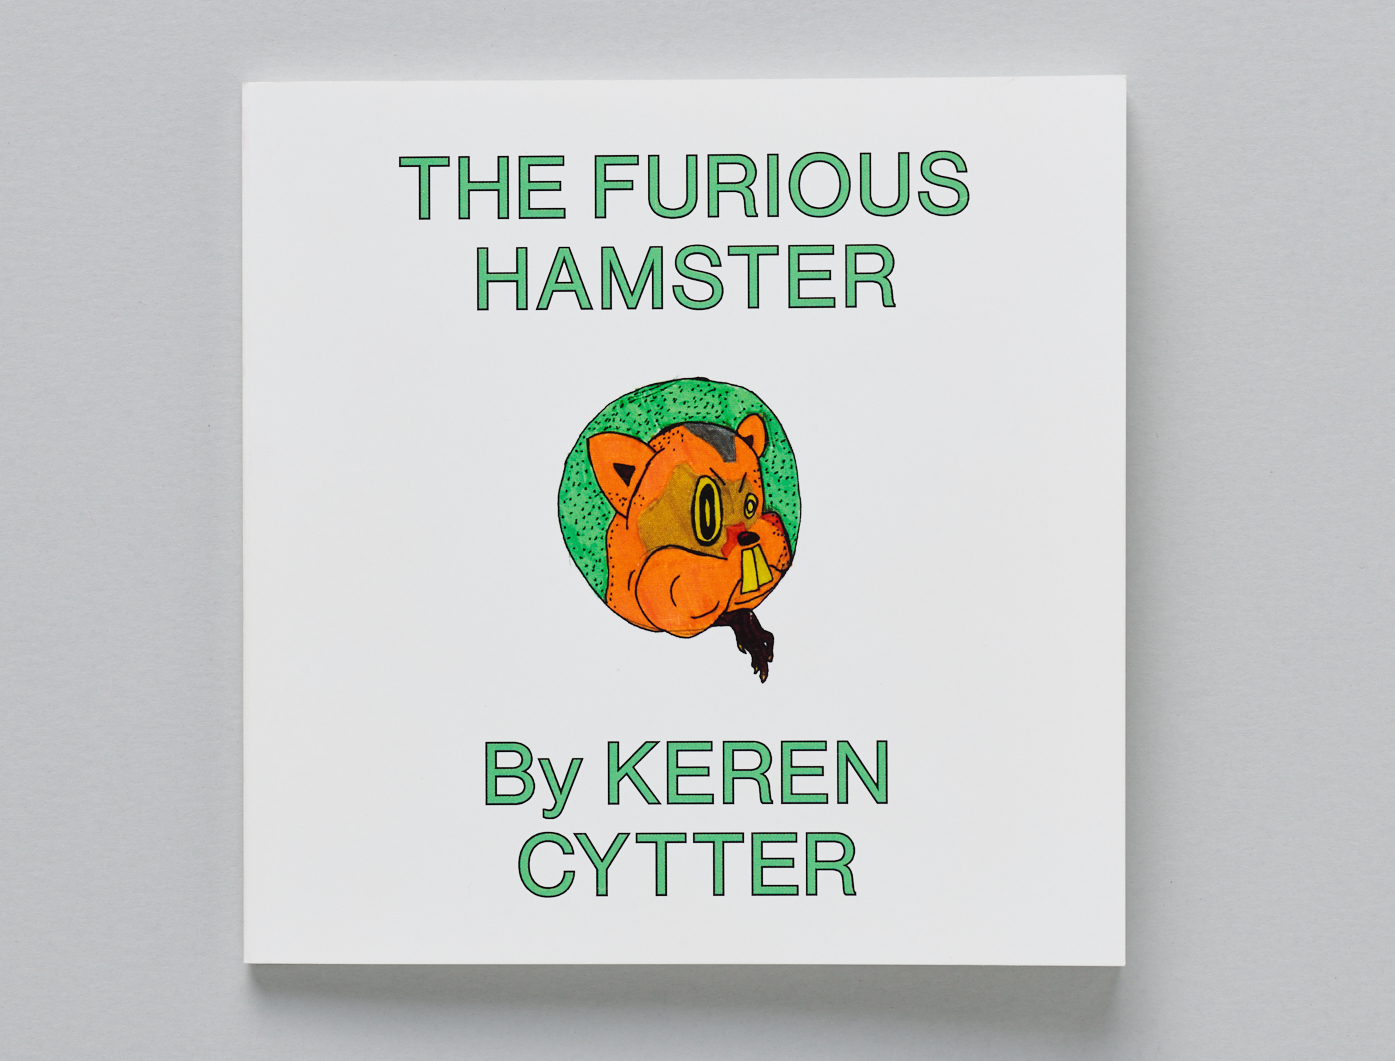 Keren CytterThe Furious Hamster